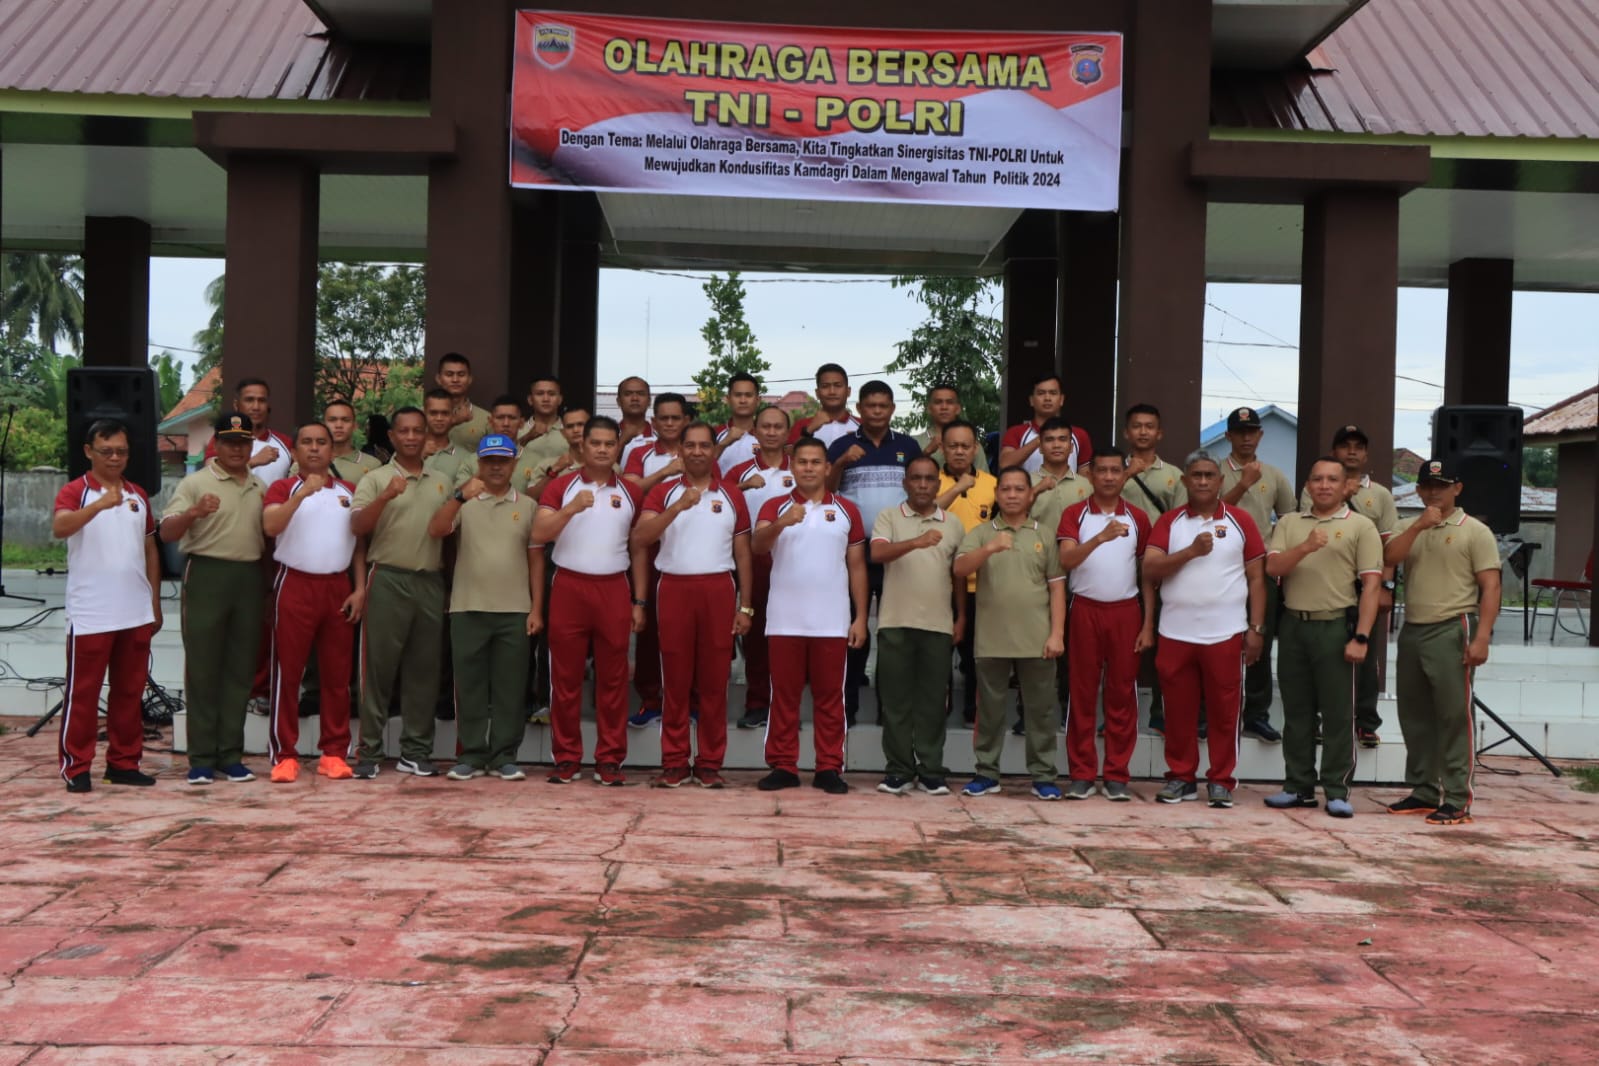 Sambut Hari Bhayangkara, TNI-Polri Olahraga Bersama